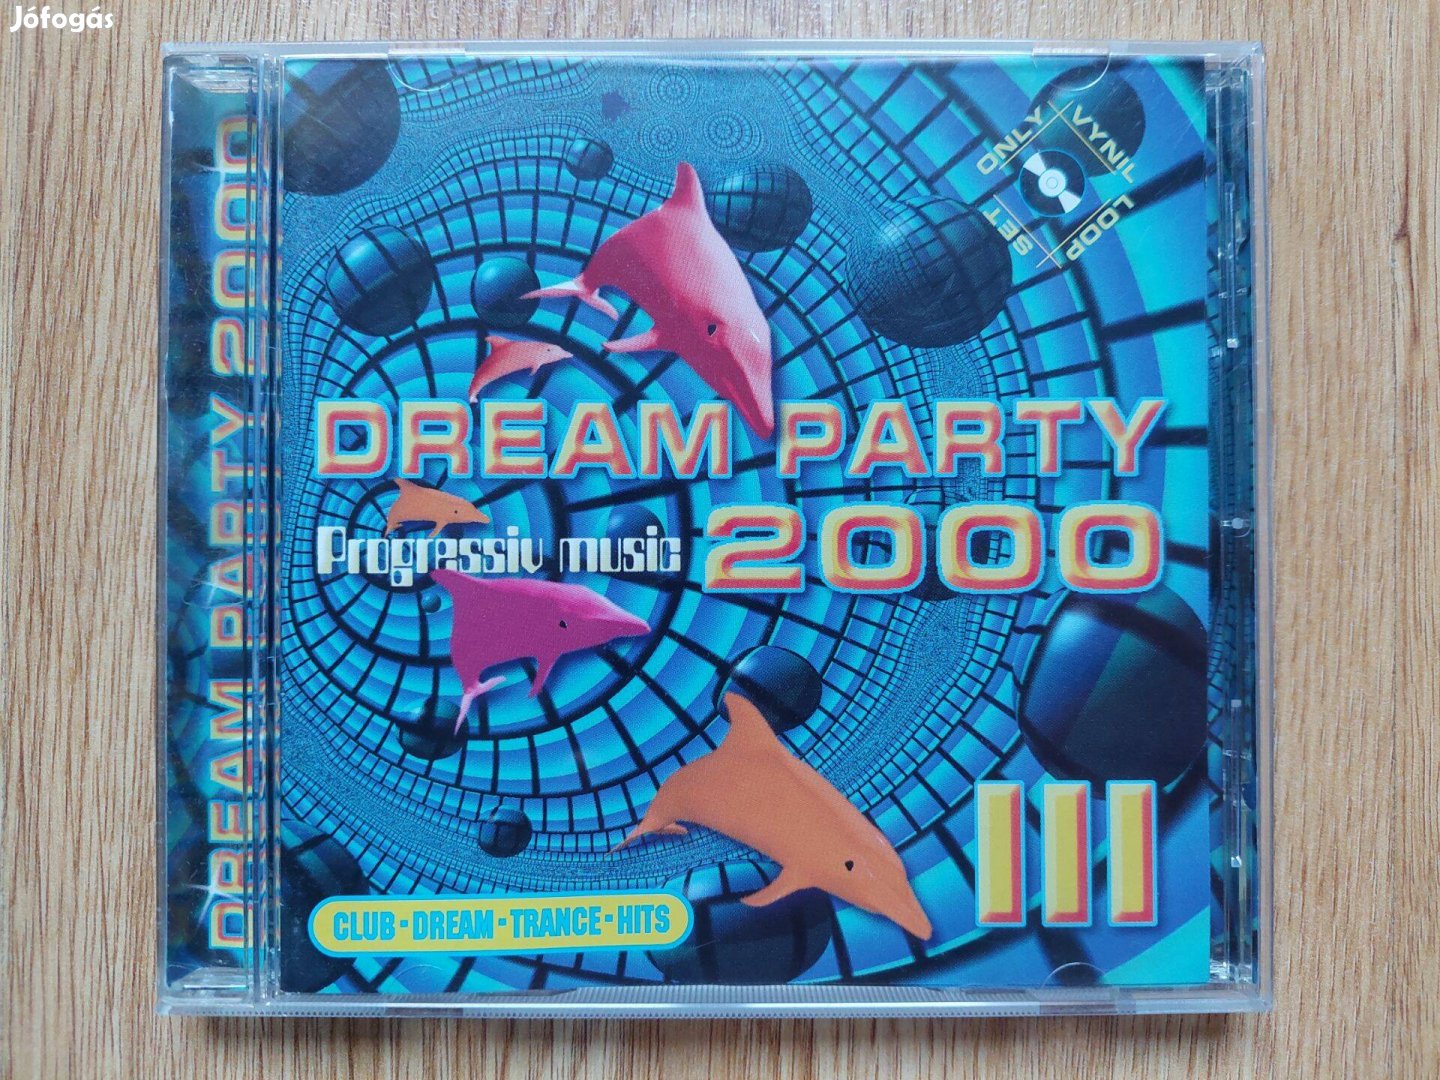 Dream Party 2000 - Progressiv Music